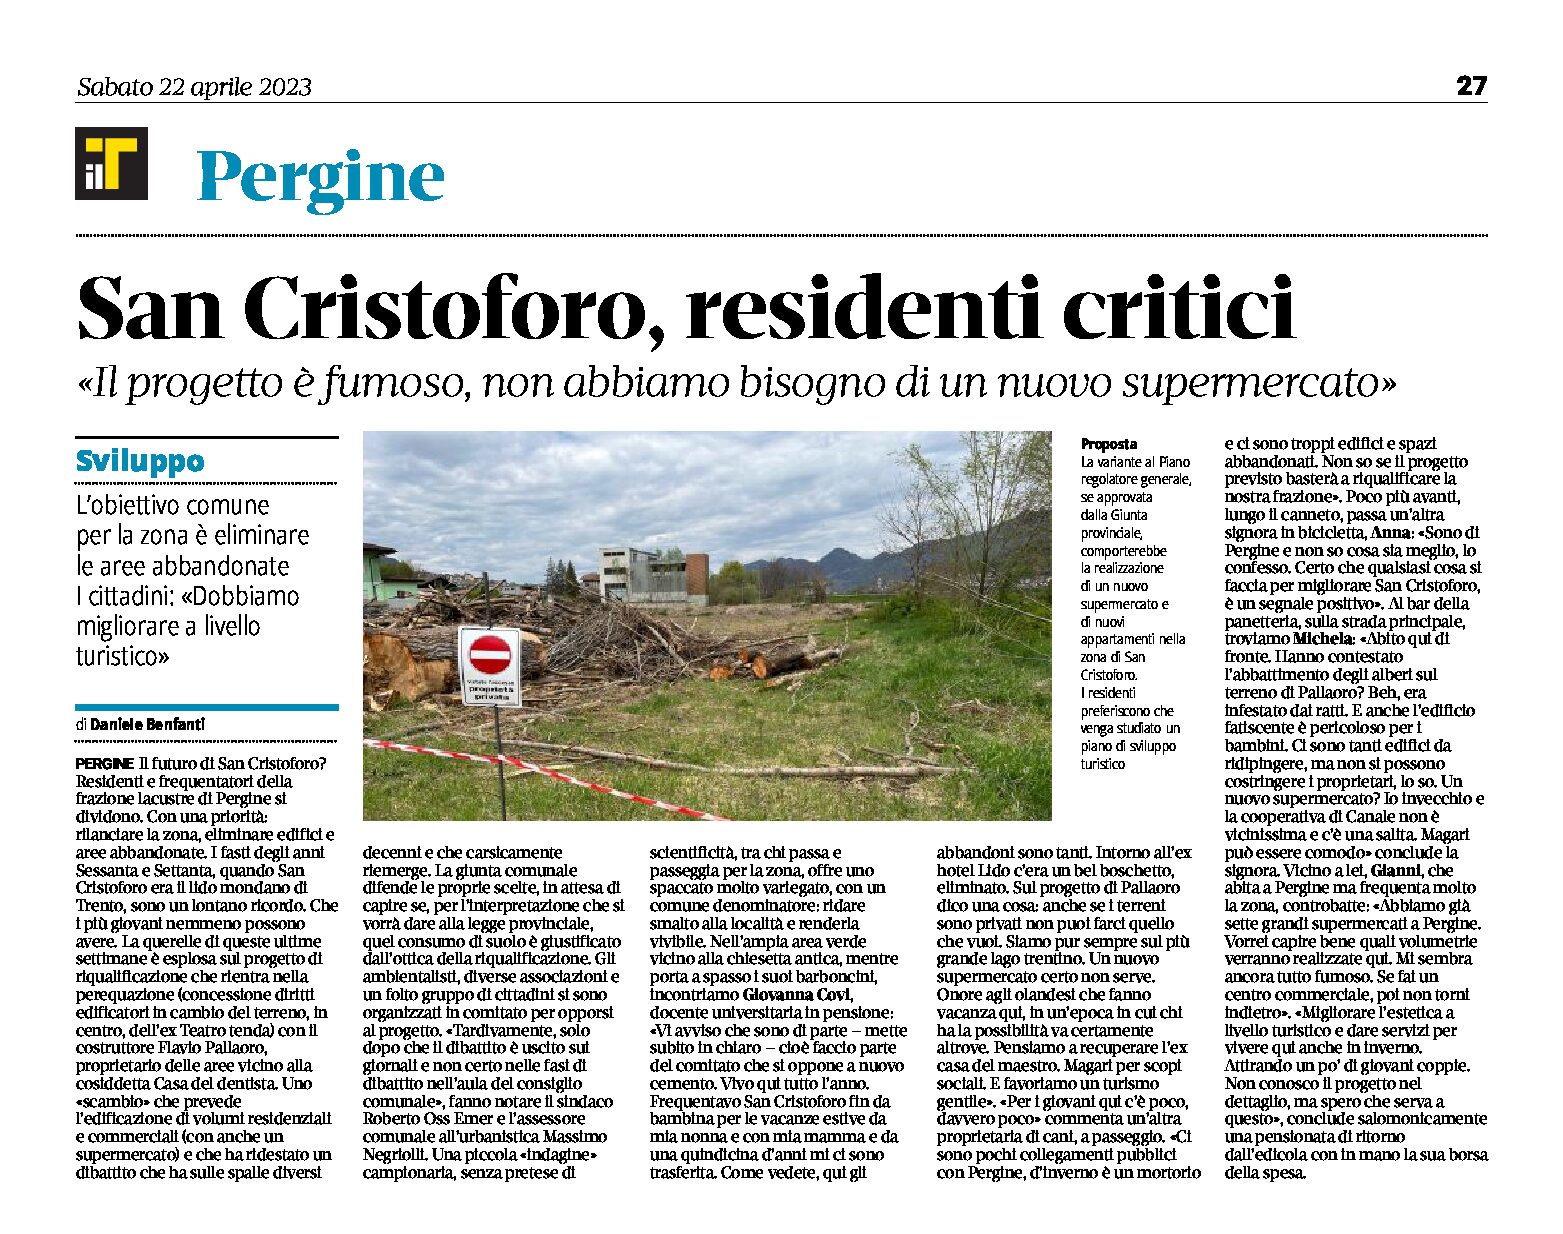 San Cristoforo: residenti critici